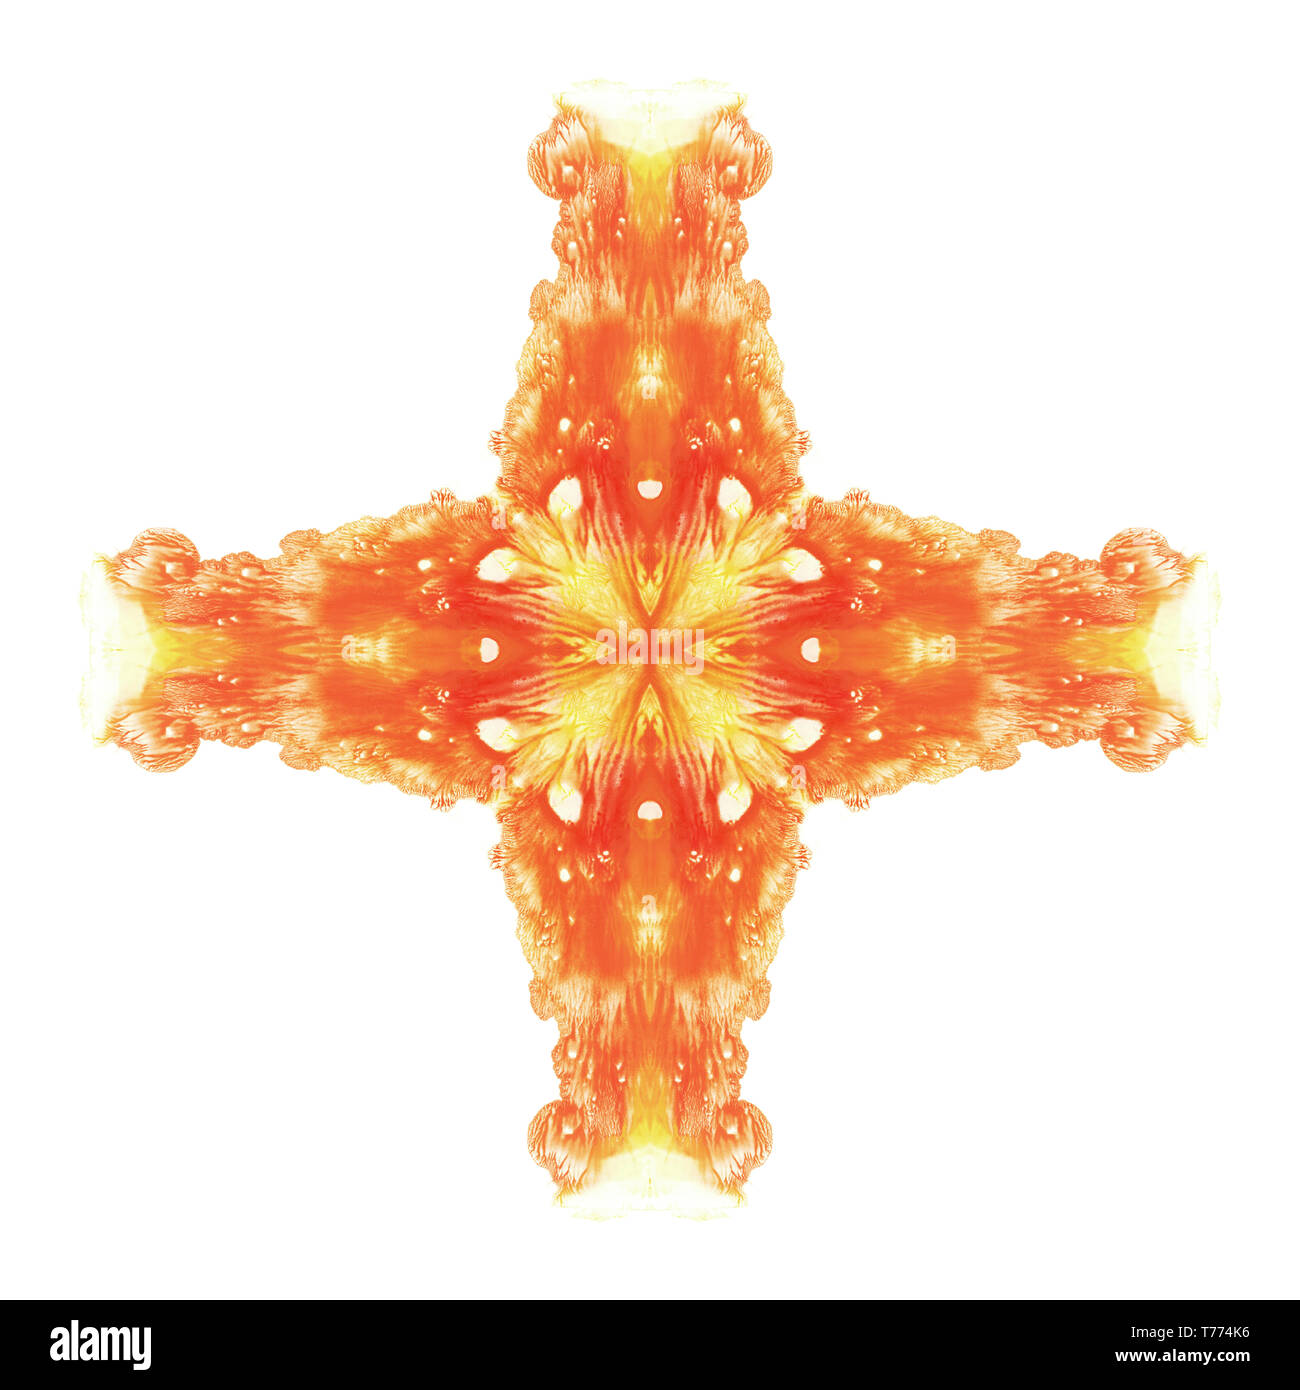 Fiery décoratifs croix. Peinture aquarelle abstraite lumineux. Image symétrique dessiné à la main. Jaune, rouge et orange de la peinture. Banque D'Images